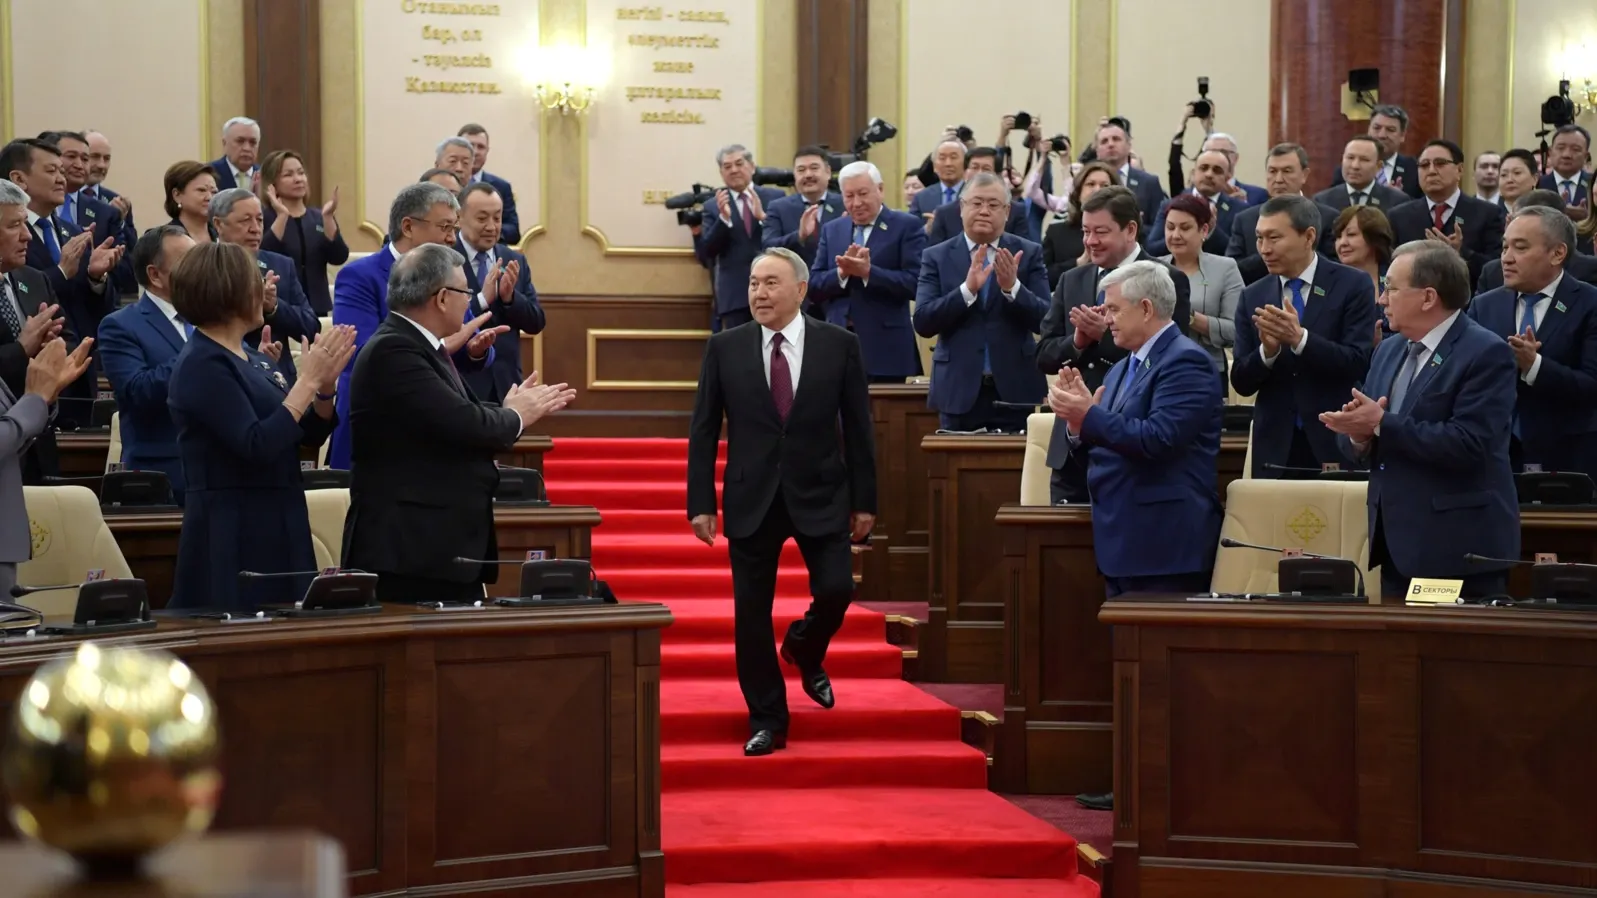 
											
											Nazarboyev Qozog‘iston faxriy senatori maqomidan mahrum etildi
											
											